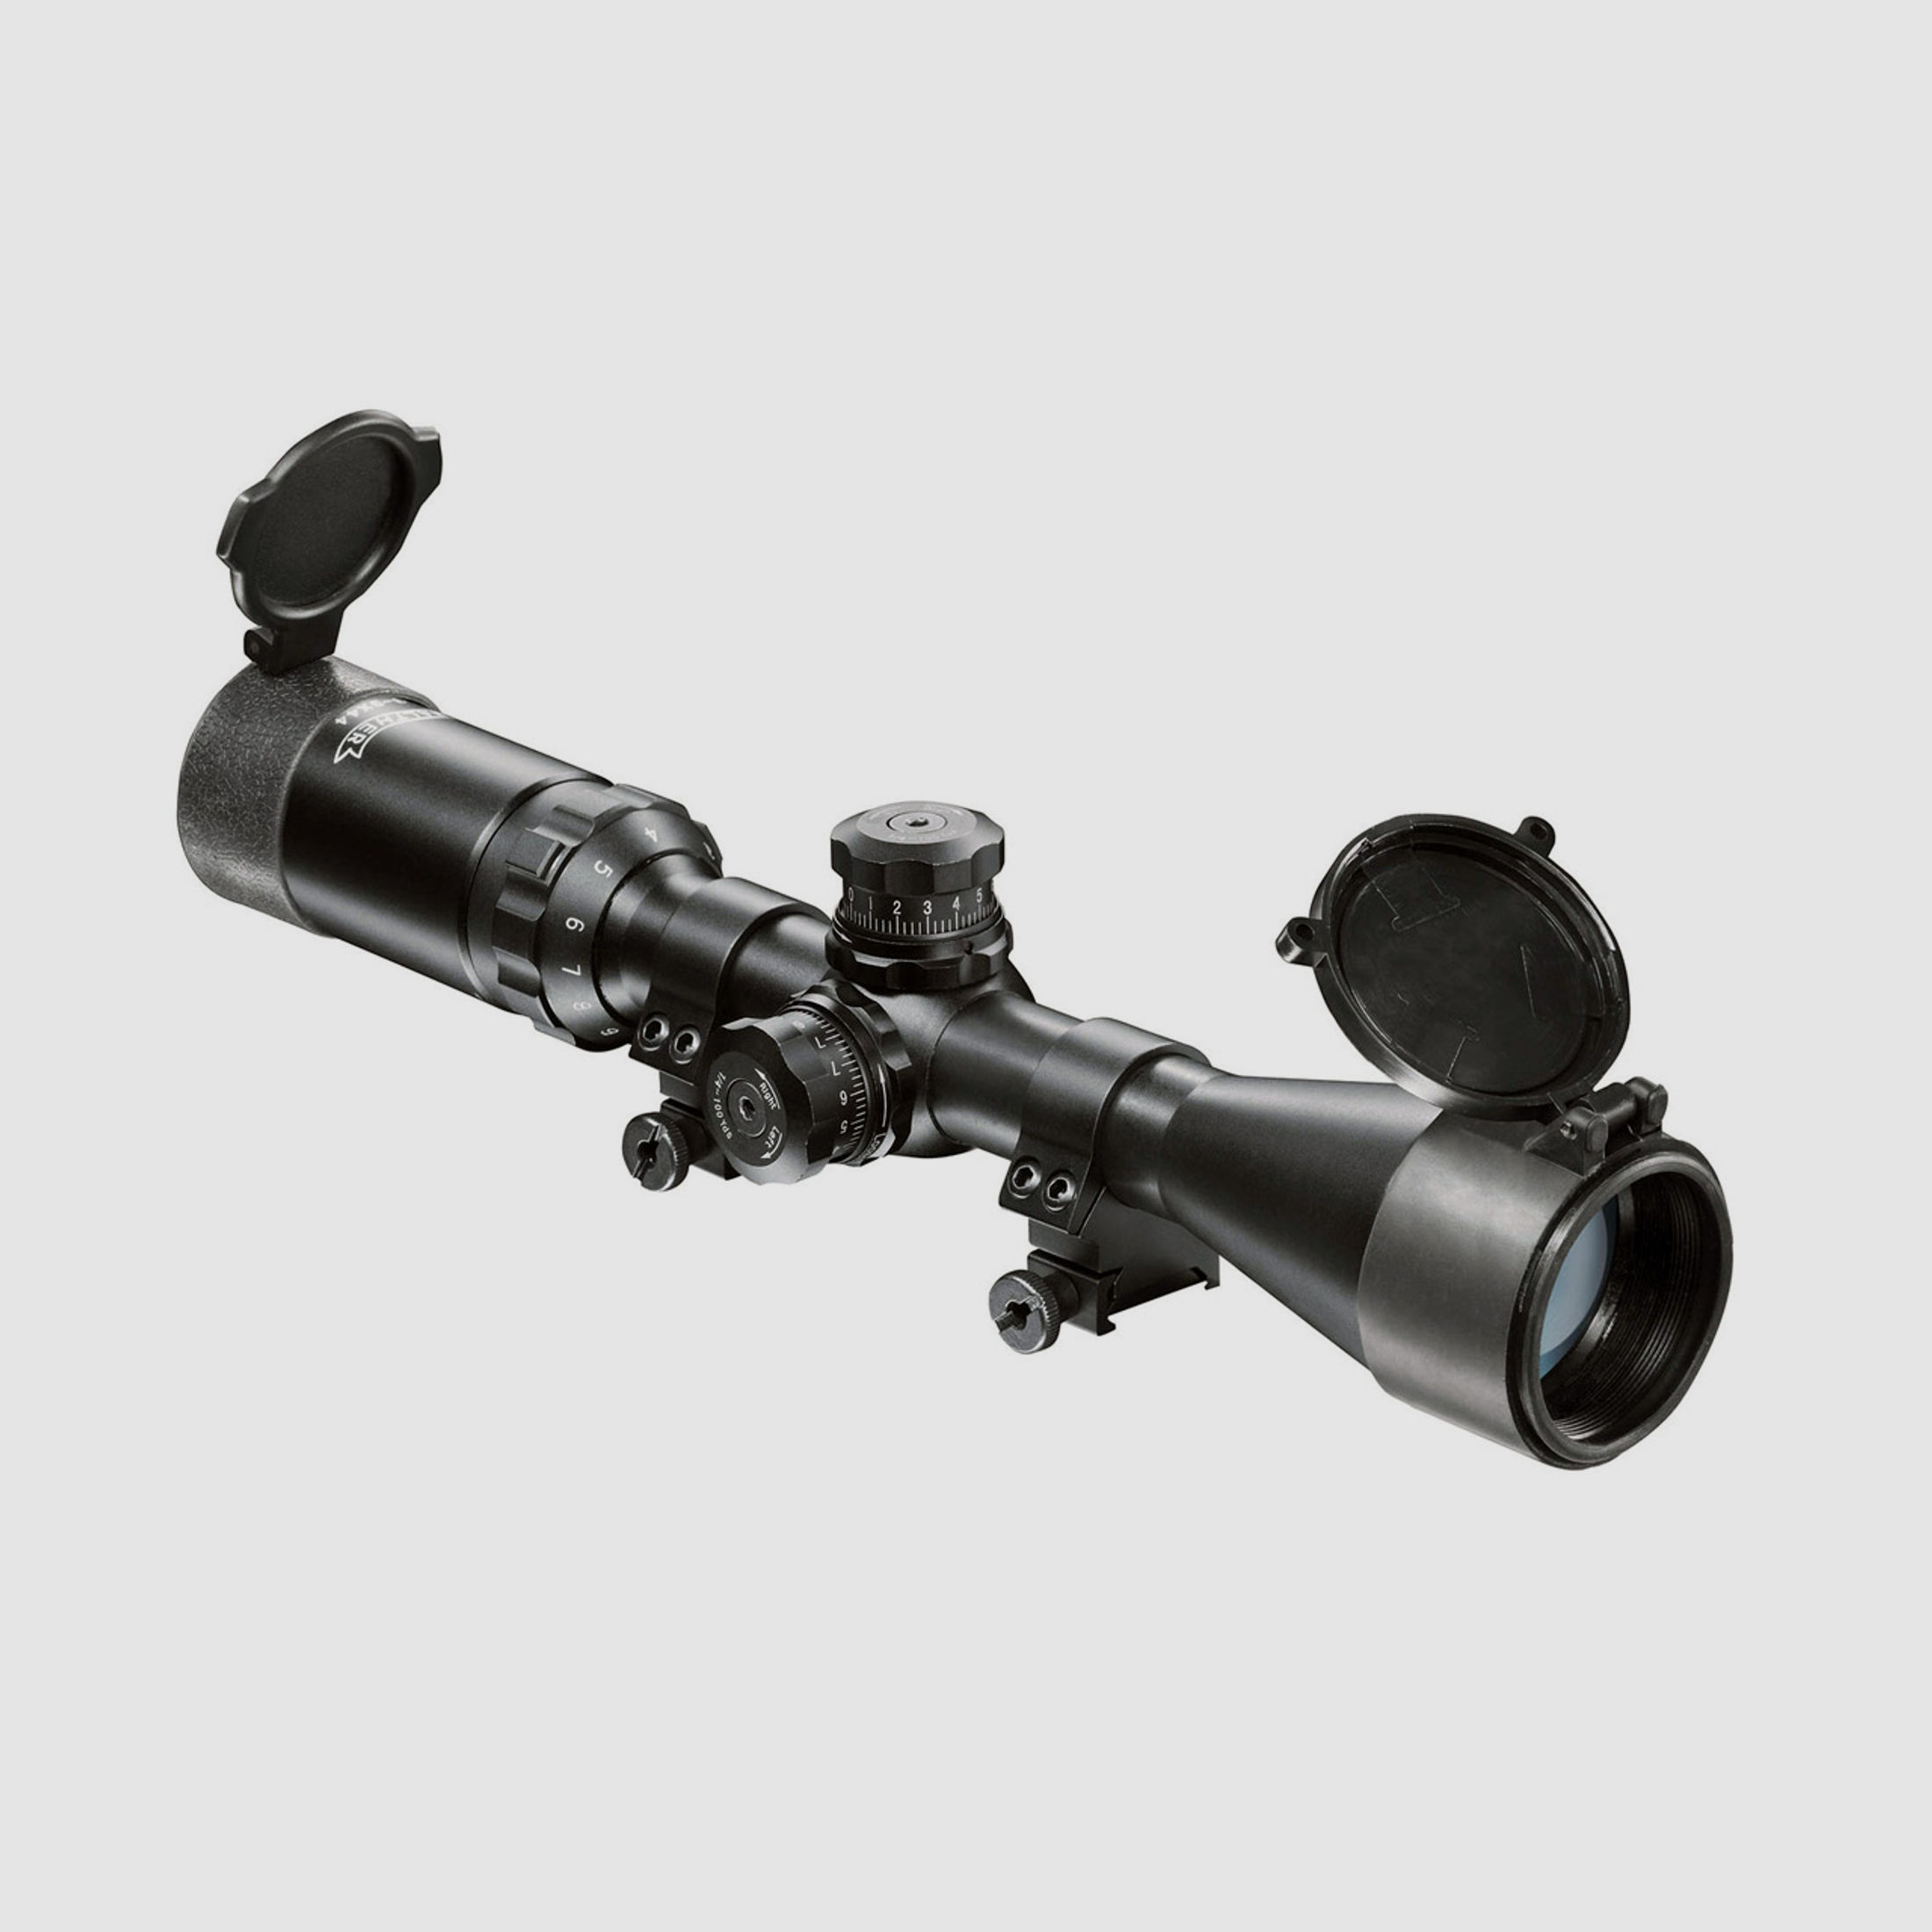 Taktisches Zielfernrohr Walther 3-9x44 Sniper, MilDot Absehen, Montage fĂĽr Weaver-, Picatinny-Schienen